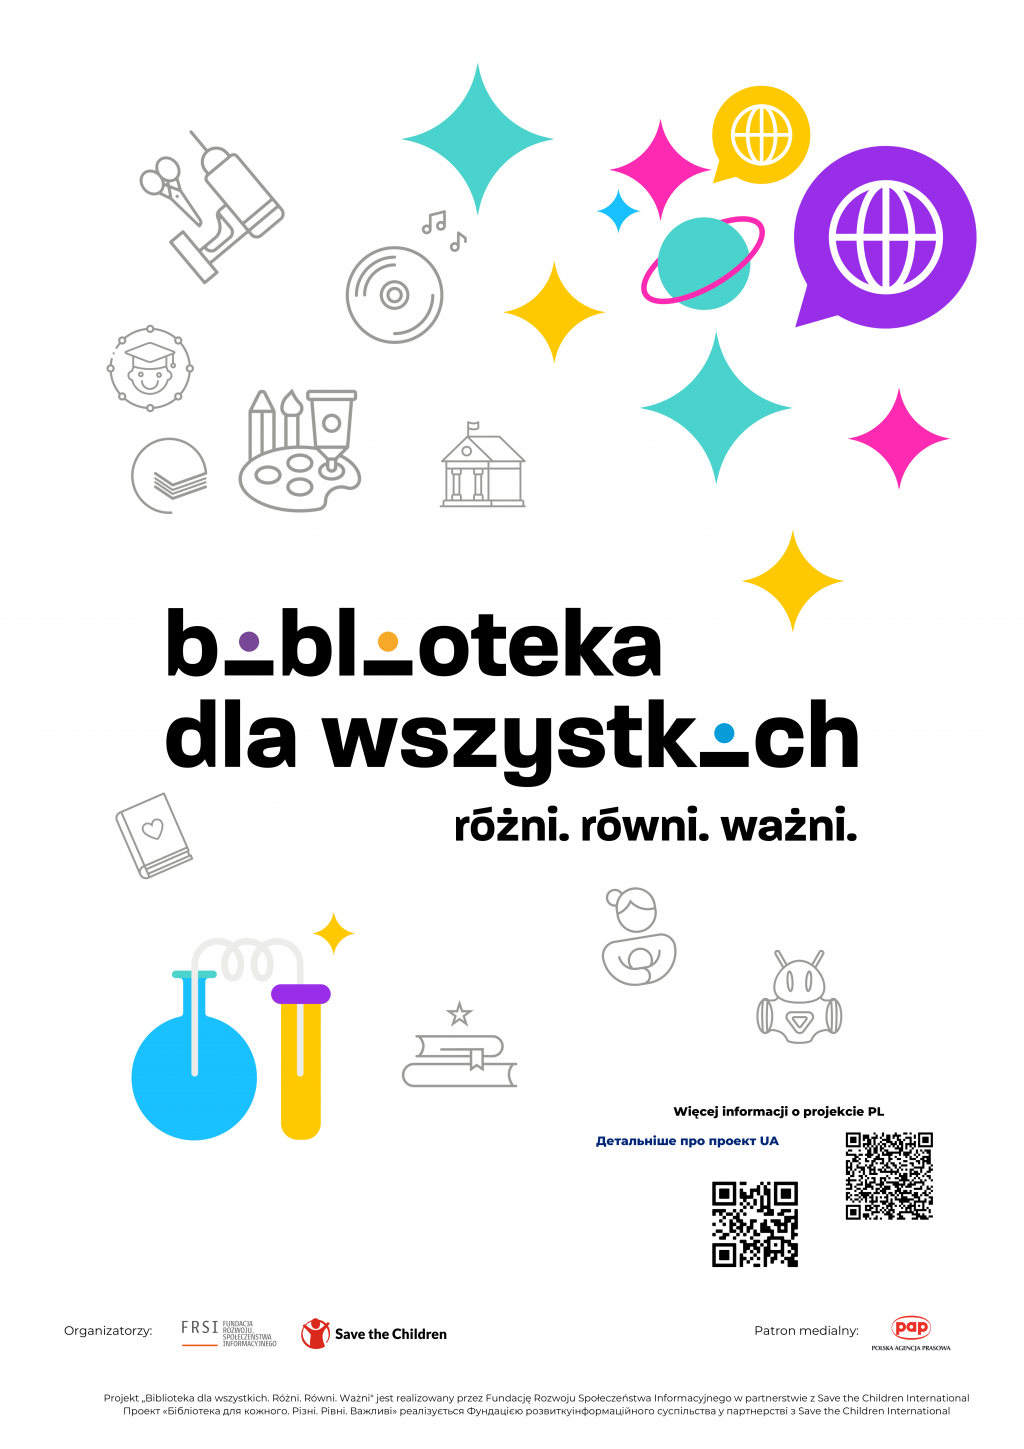 Plakat projektu "Biblioteka dla wszystkich. Różni. Równi. Ważni" prowadzonego przez Fundację Rozwoju Społeczeństwa Informacyjnego oraz fundację Save the Children i realizowanego w Miejskiej Bibliotece Publicznej w Starogardzie Gdańskim.